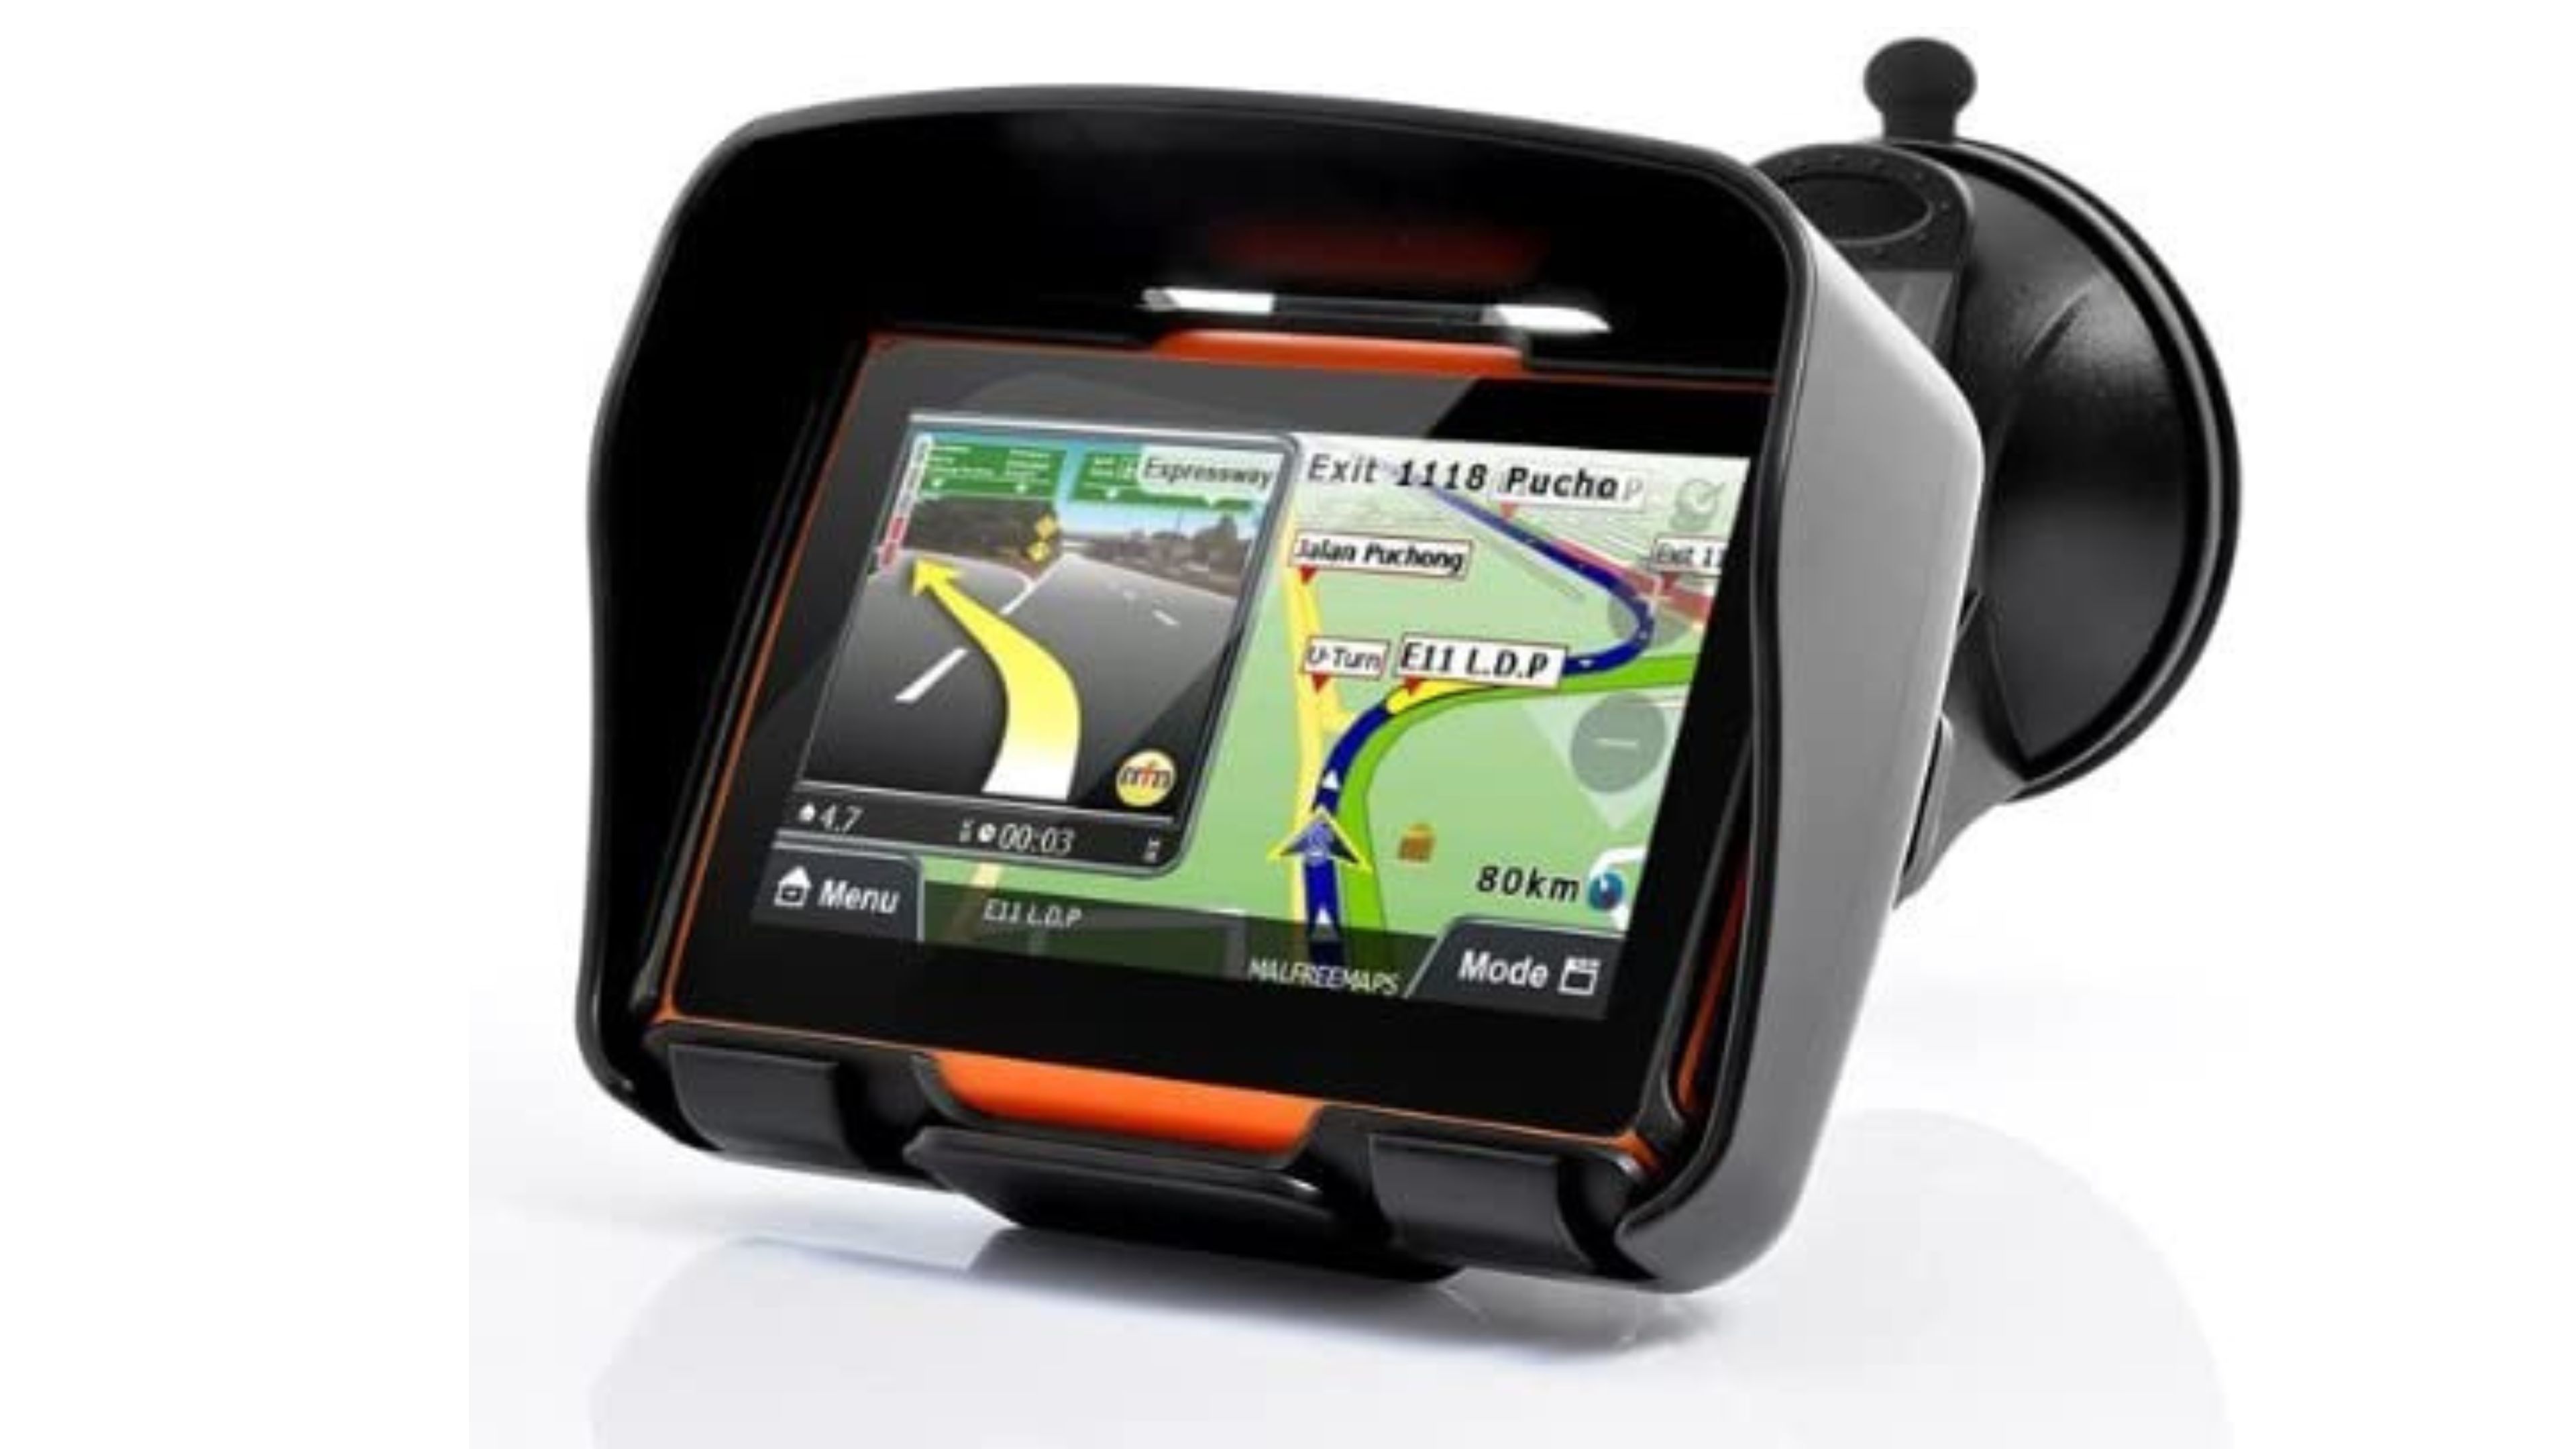 Cómo utilizar tu Smartphone como navegador GPS en tu moto o scooter? -  Moto125